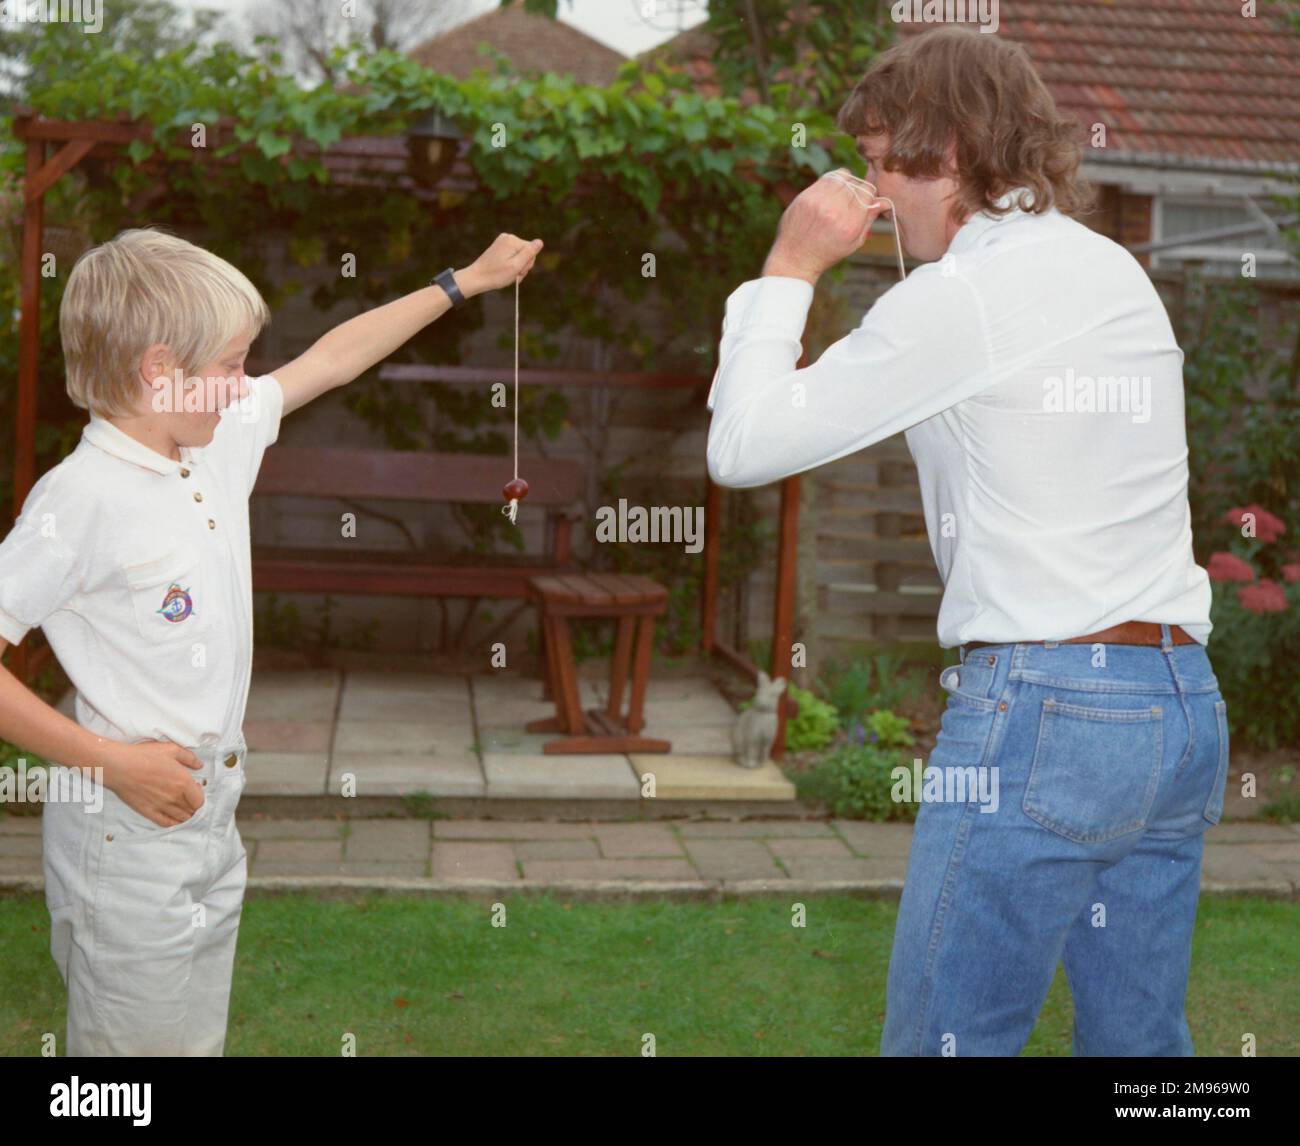 Ein Junge und ein junger Mann, die im Garten Conker spielen. Der Junge hält sein Konker fest, damit der Mann zuschlagen kann. Stockfoto